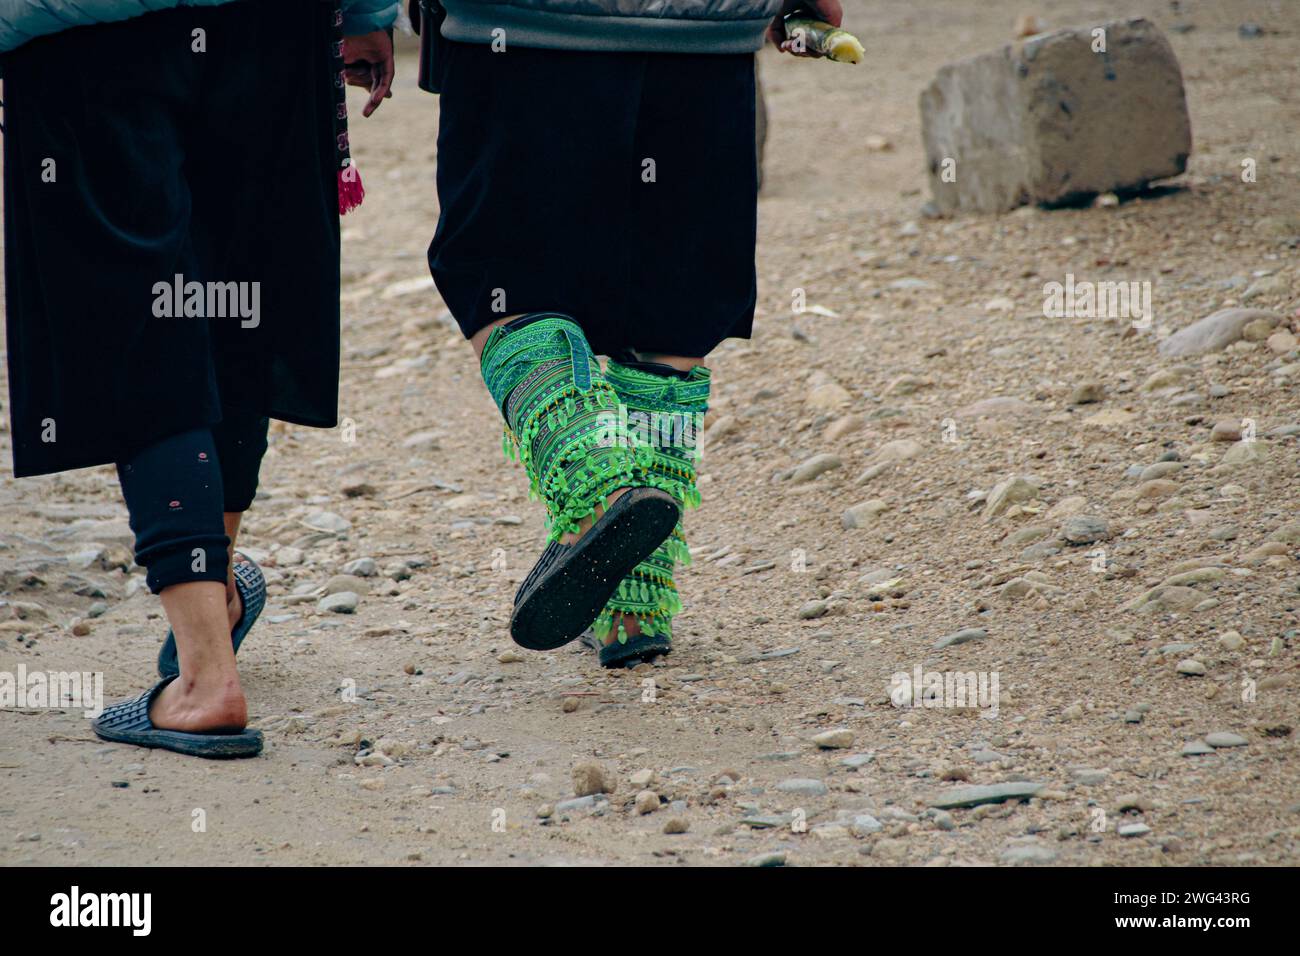 Schließen Sie bis zu zwei schwarze hmong-Frauen, die gehen und ihre ethnischen Beinornamente tragen, und zeigen Sie das authentische tägliche Leben und die Kultur im Lao Chai Village Sa Stockfoto